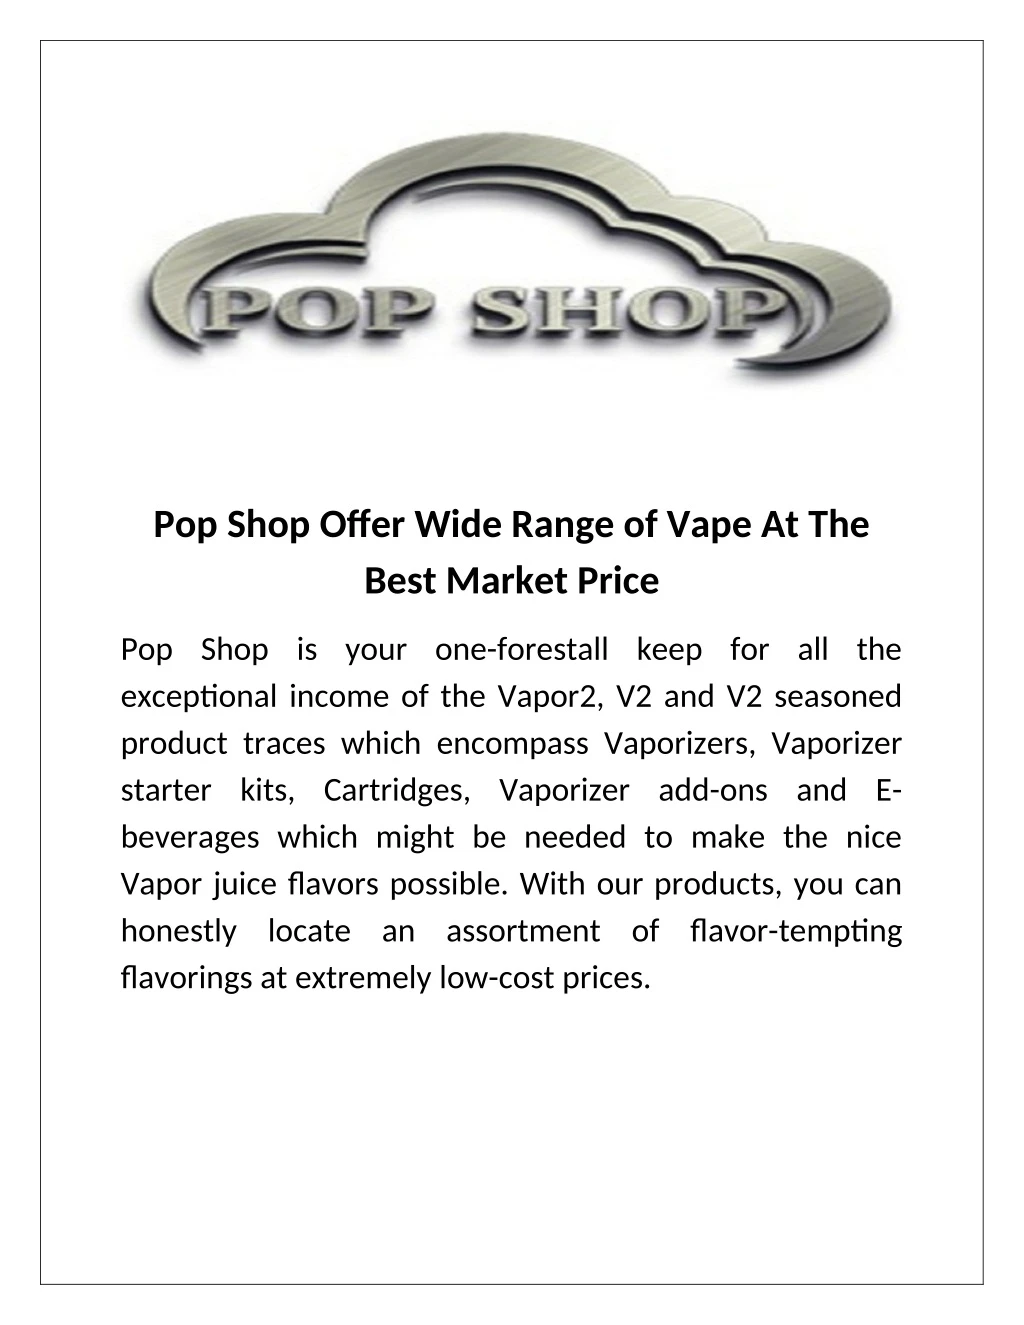 pop shop offer wide range of vape at the best